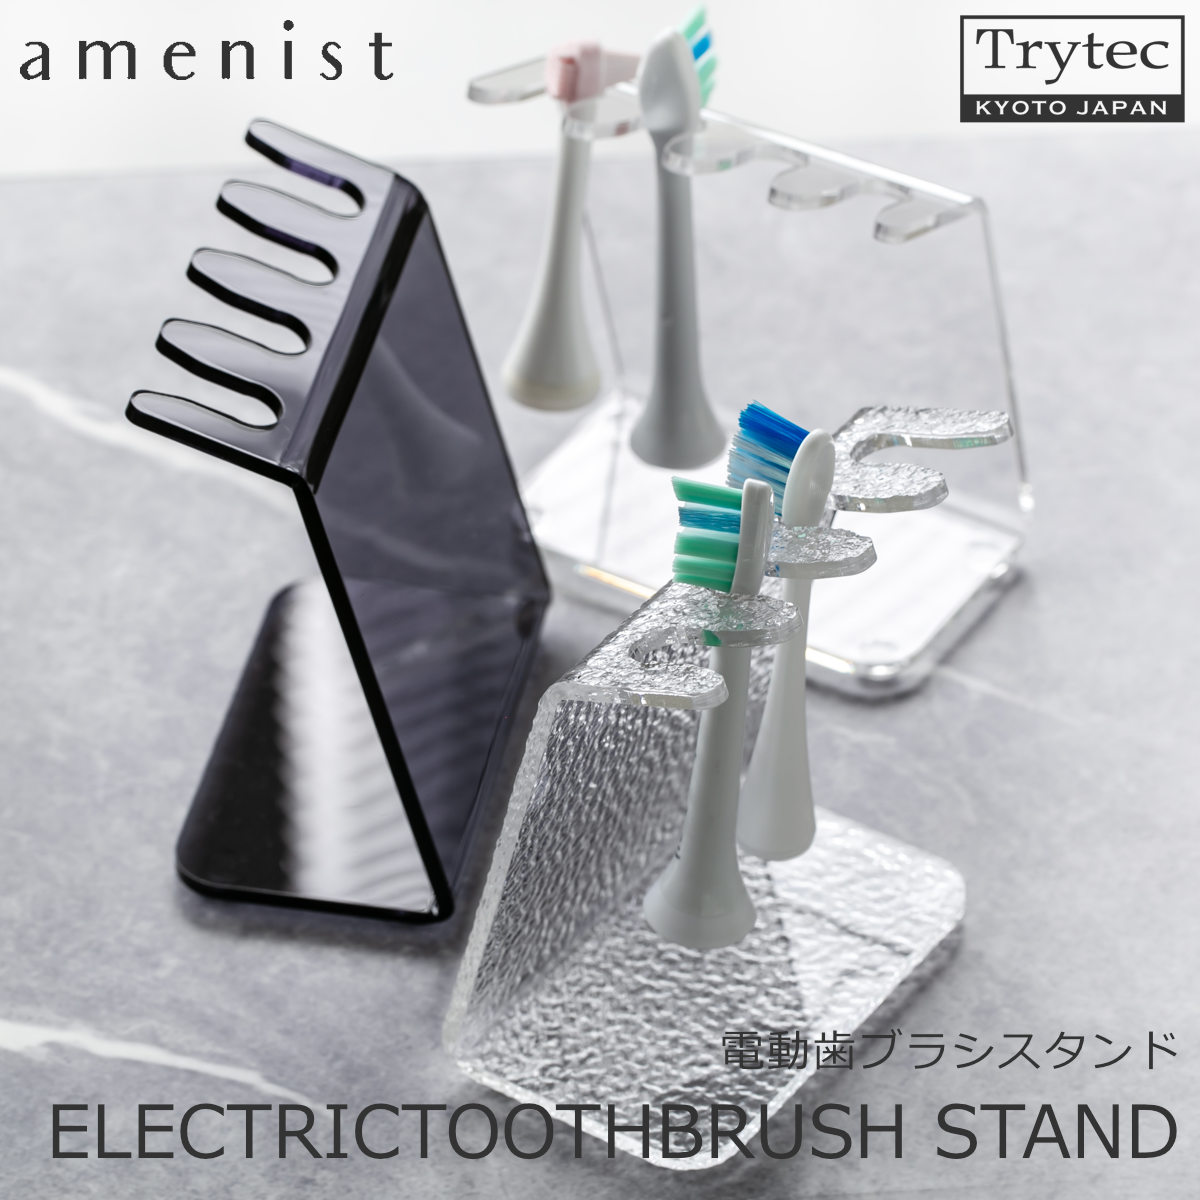 【日本製】 電動歯ブラシスタンド amenist 004-608 アクリル製 歯ブラシ立て 透明